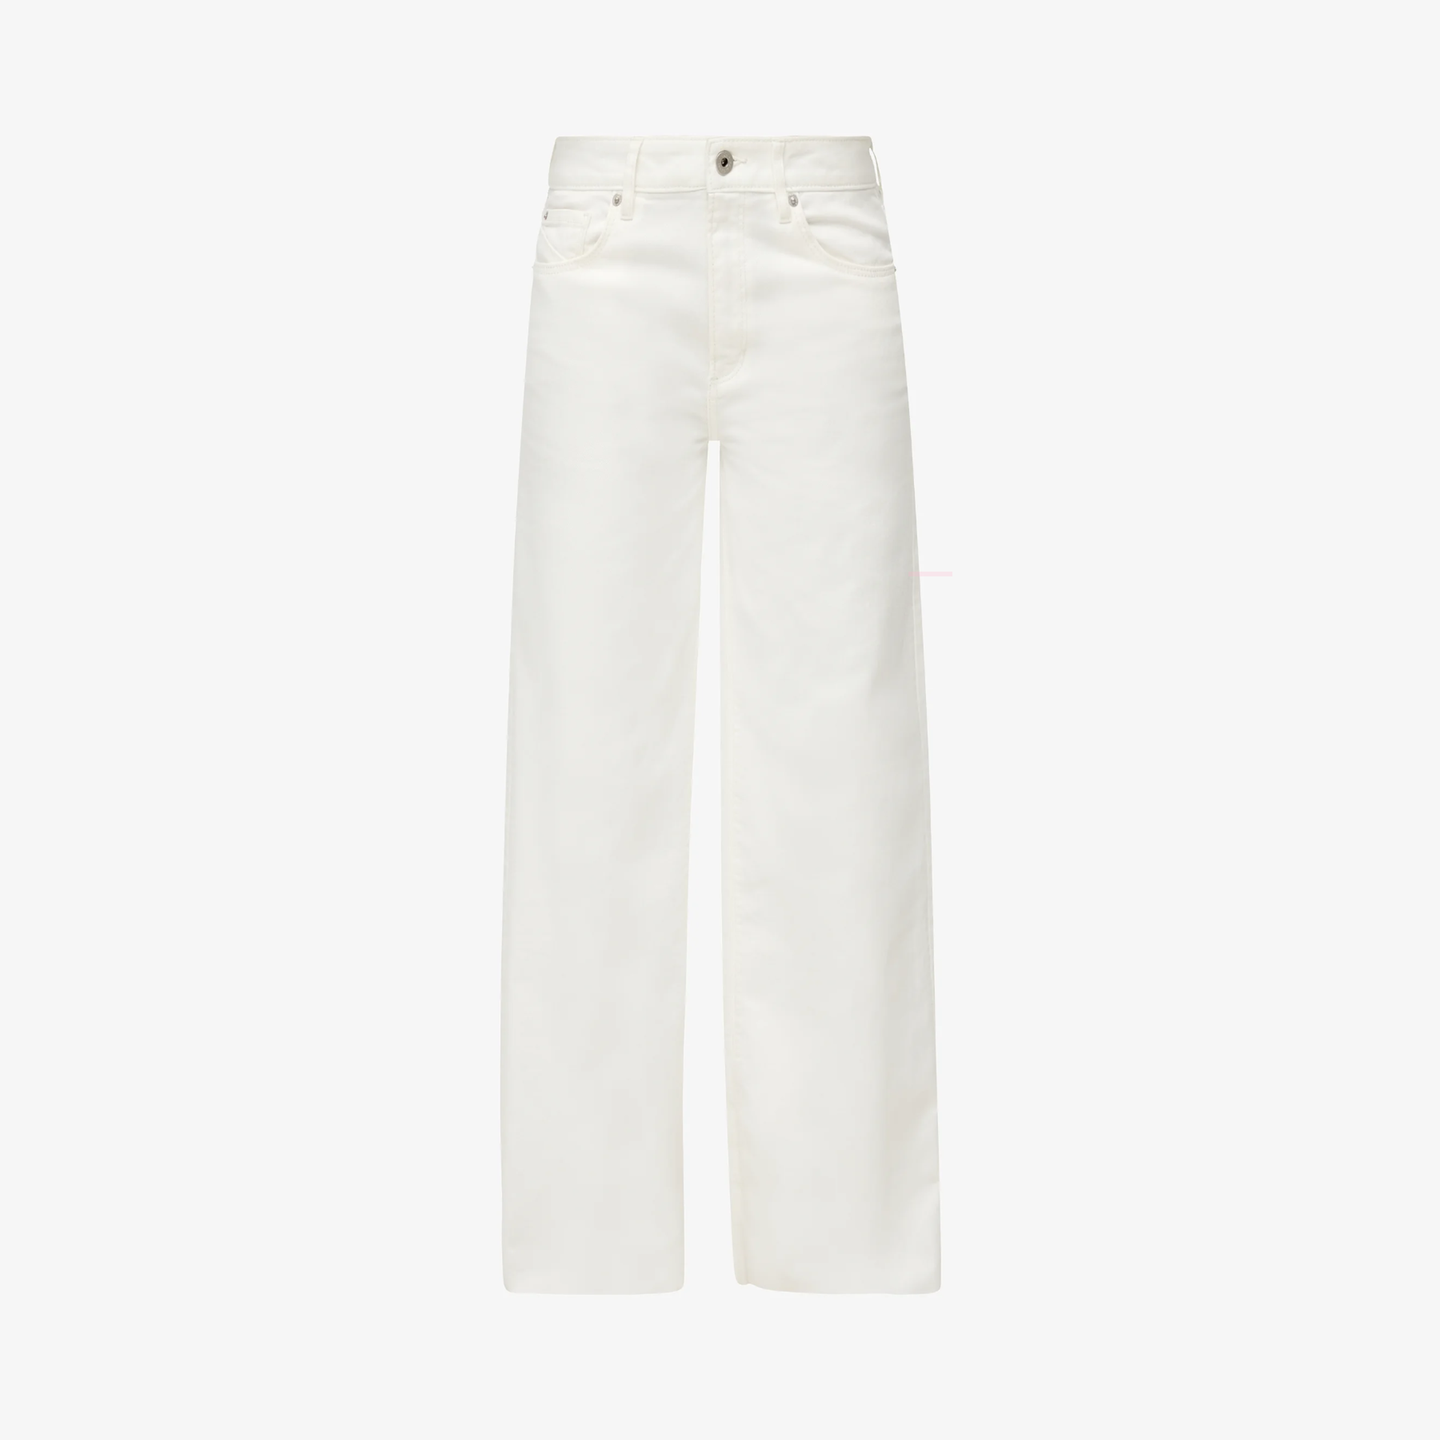 Eine gute weiße Jeans hat in noch keiner Garderobe geschadet. Der helle Stoff bietet die hervorragende Grundlage für euphorische Kombinationen, aber auch monochrome Styles in Weiß. Ein hoher Bund betont die Taille super schmeichelnd! Von QS, kostet etwa 60 Euro. 